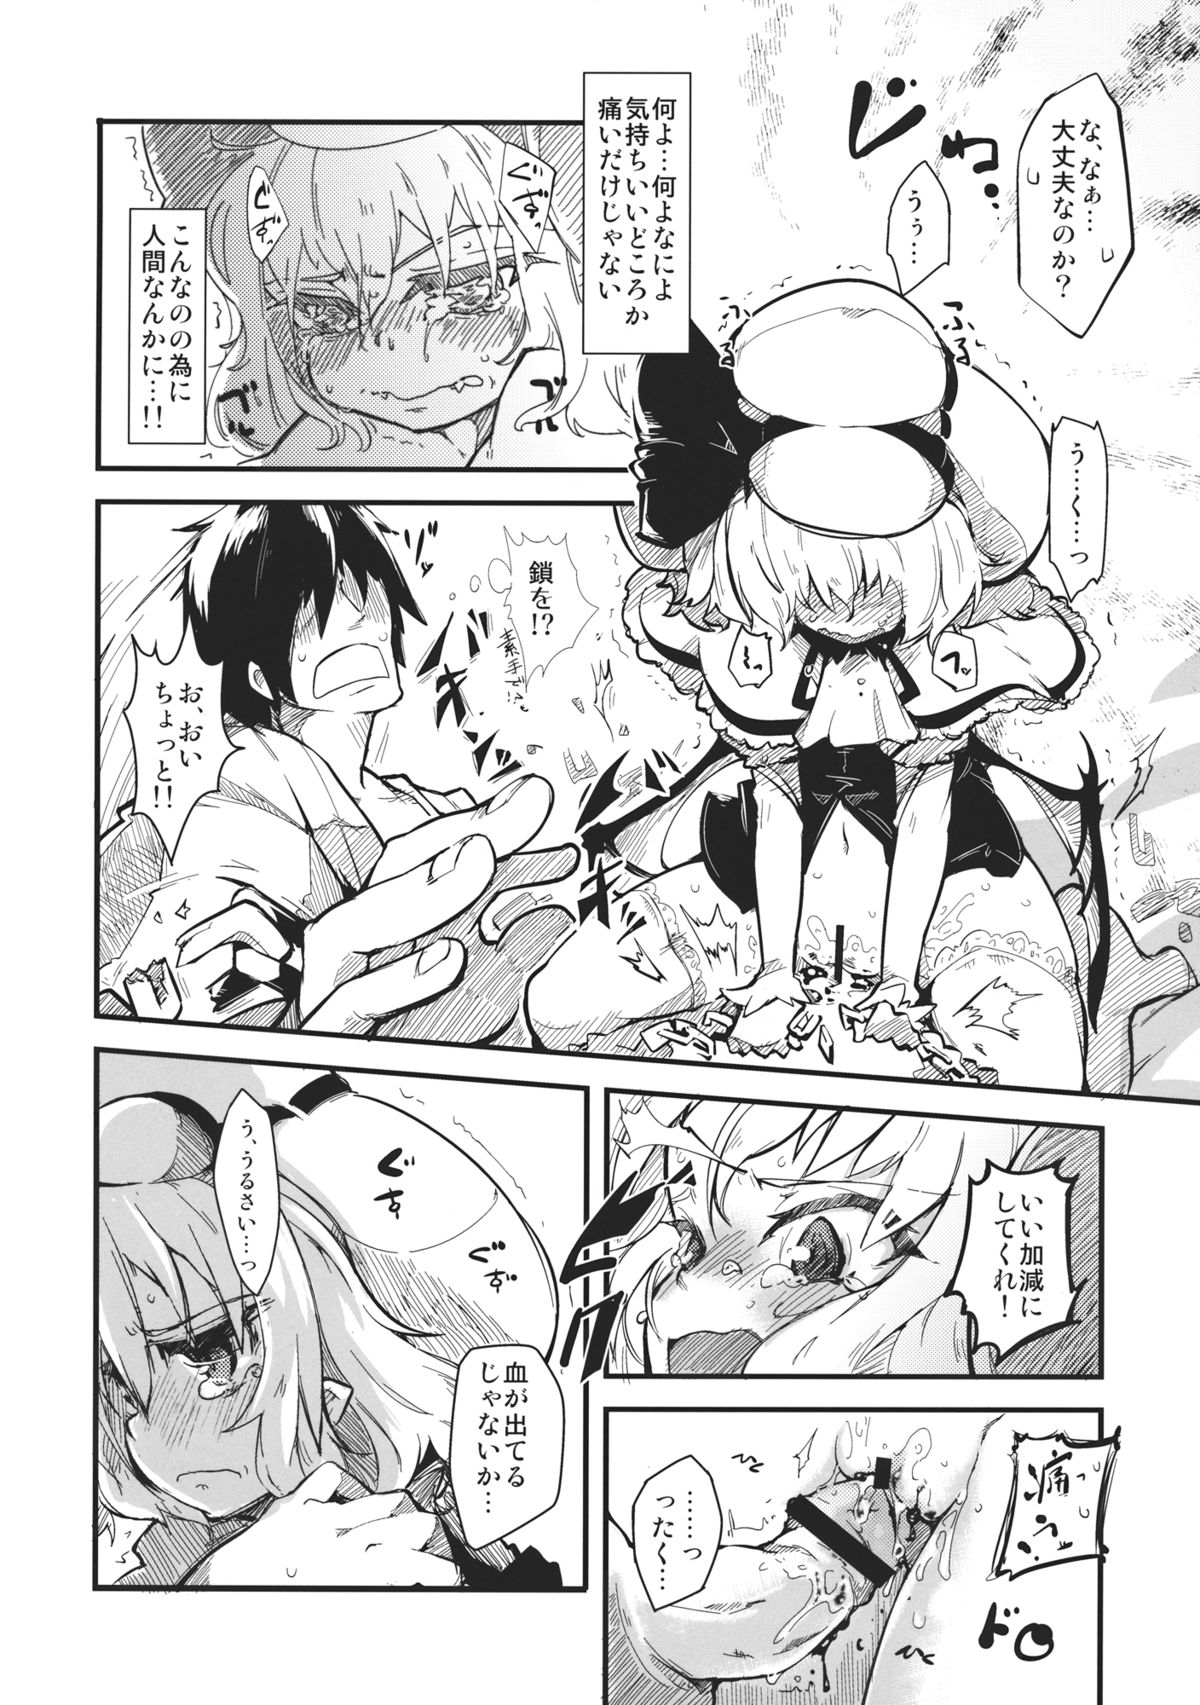 (Kouroumu 8) [*Cherish* (Nishimura Nike)] LolitaEmpress (Touhou Project) page 10 full